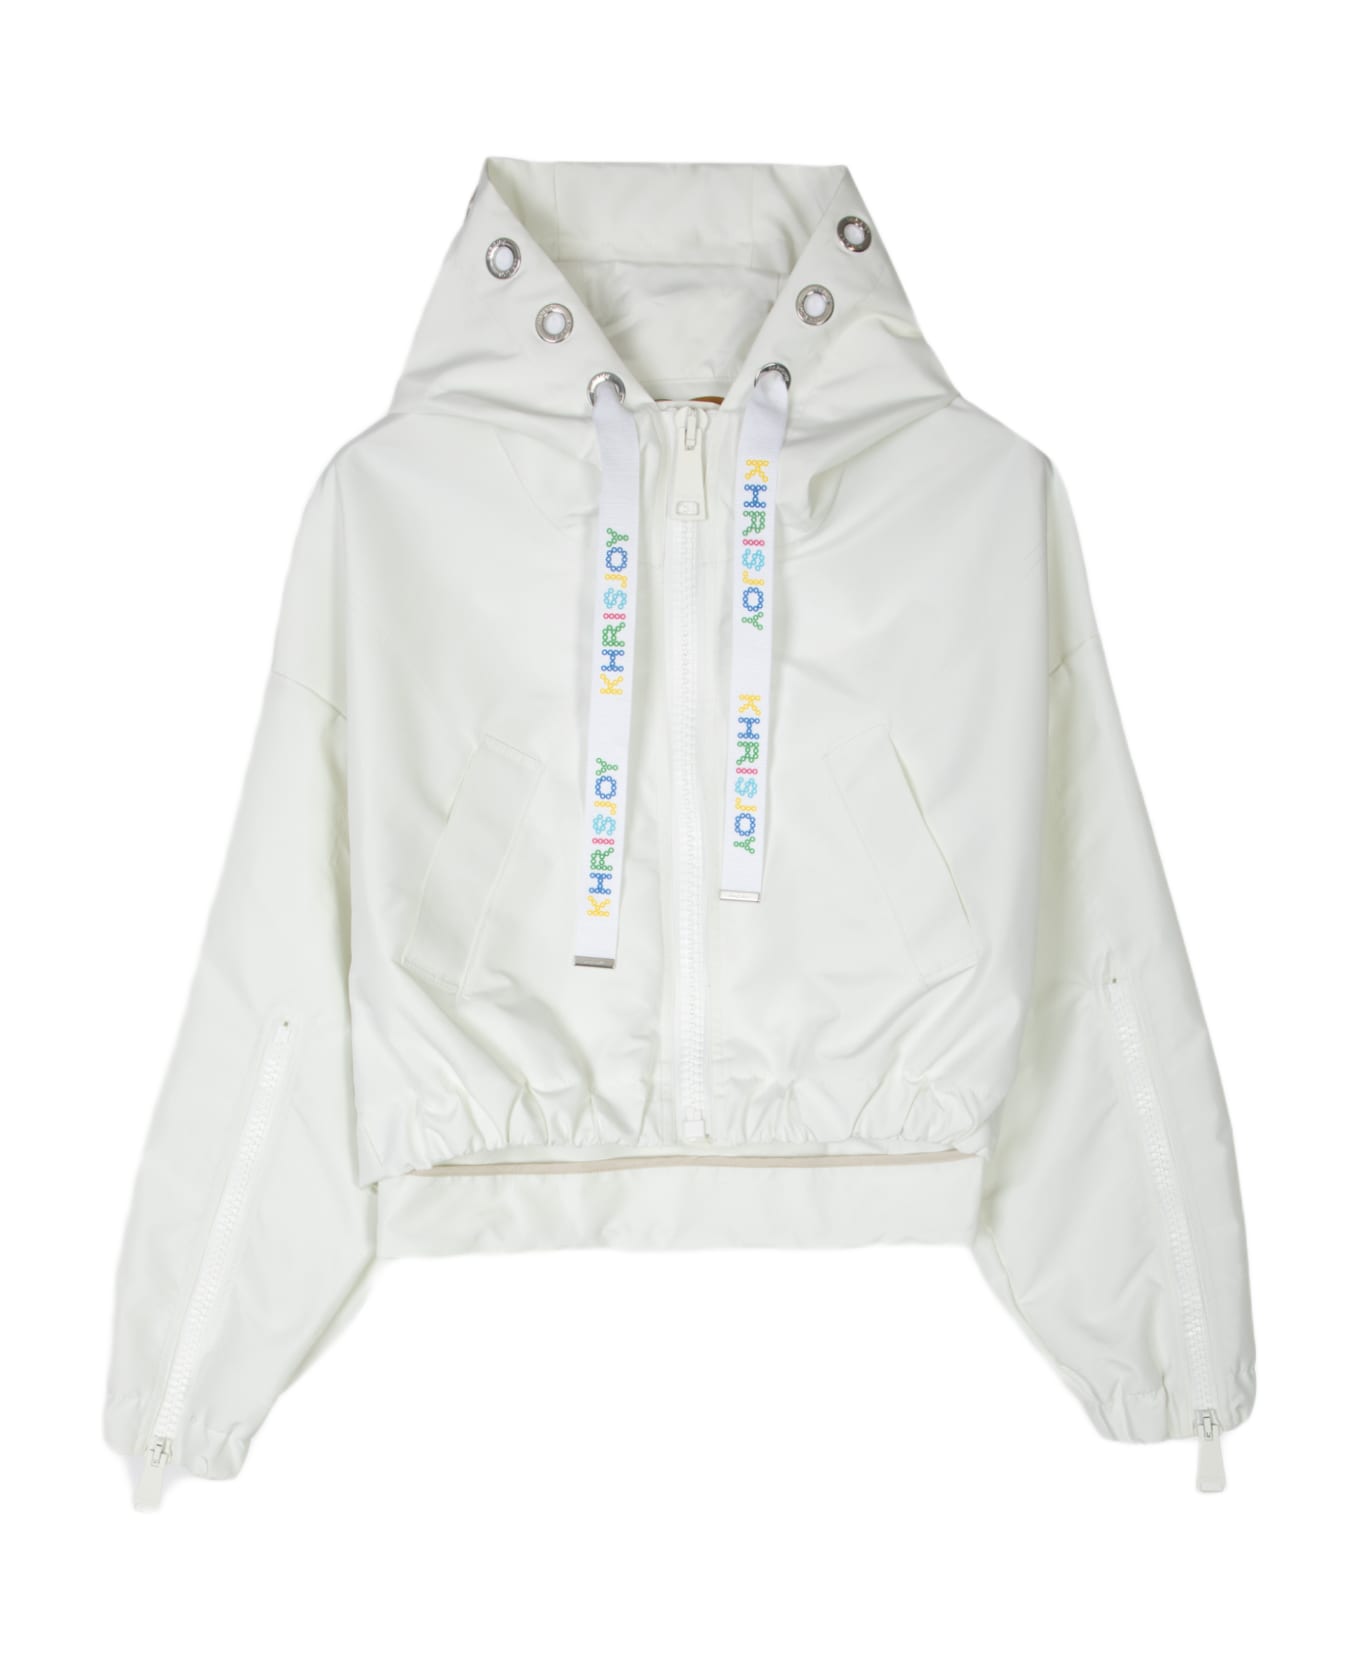 Khrisjoy New Khris Crop Windbreaker Off white nylon hooded windproof jacket - New Khris Crop Windbreaker - Bianco